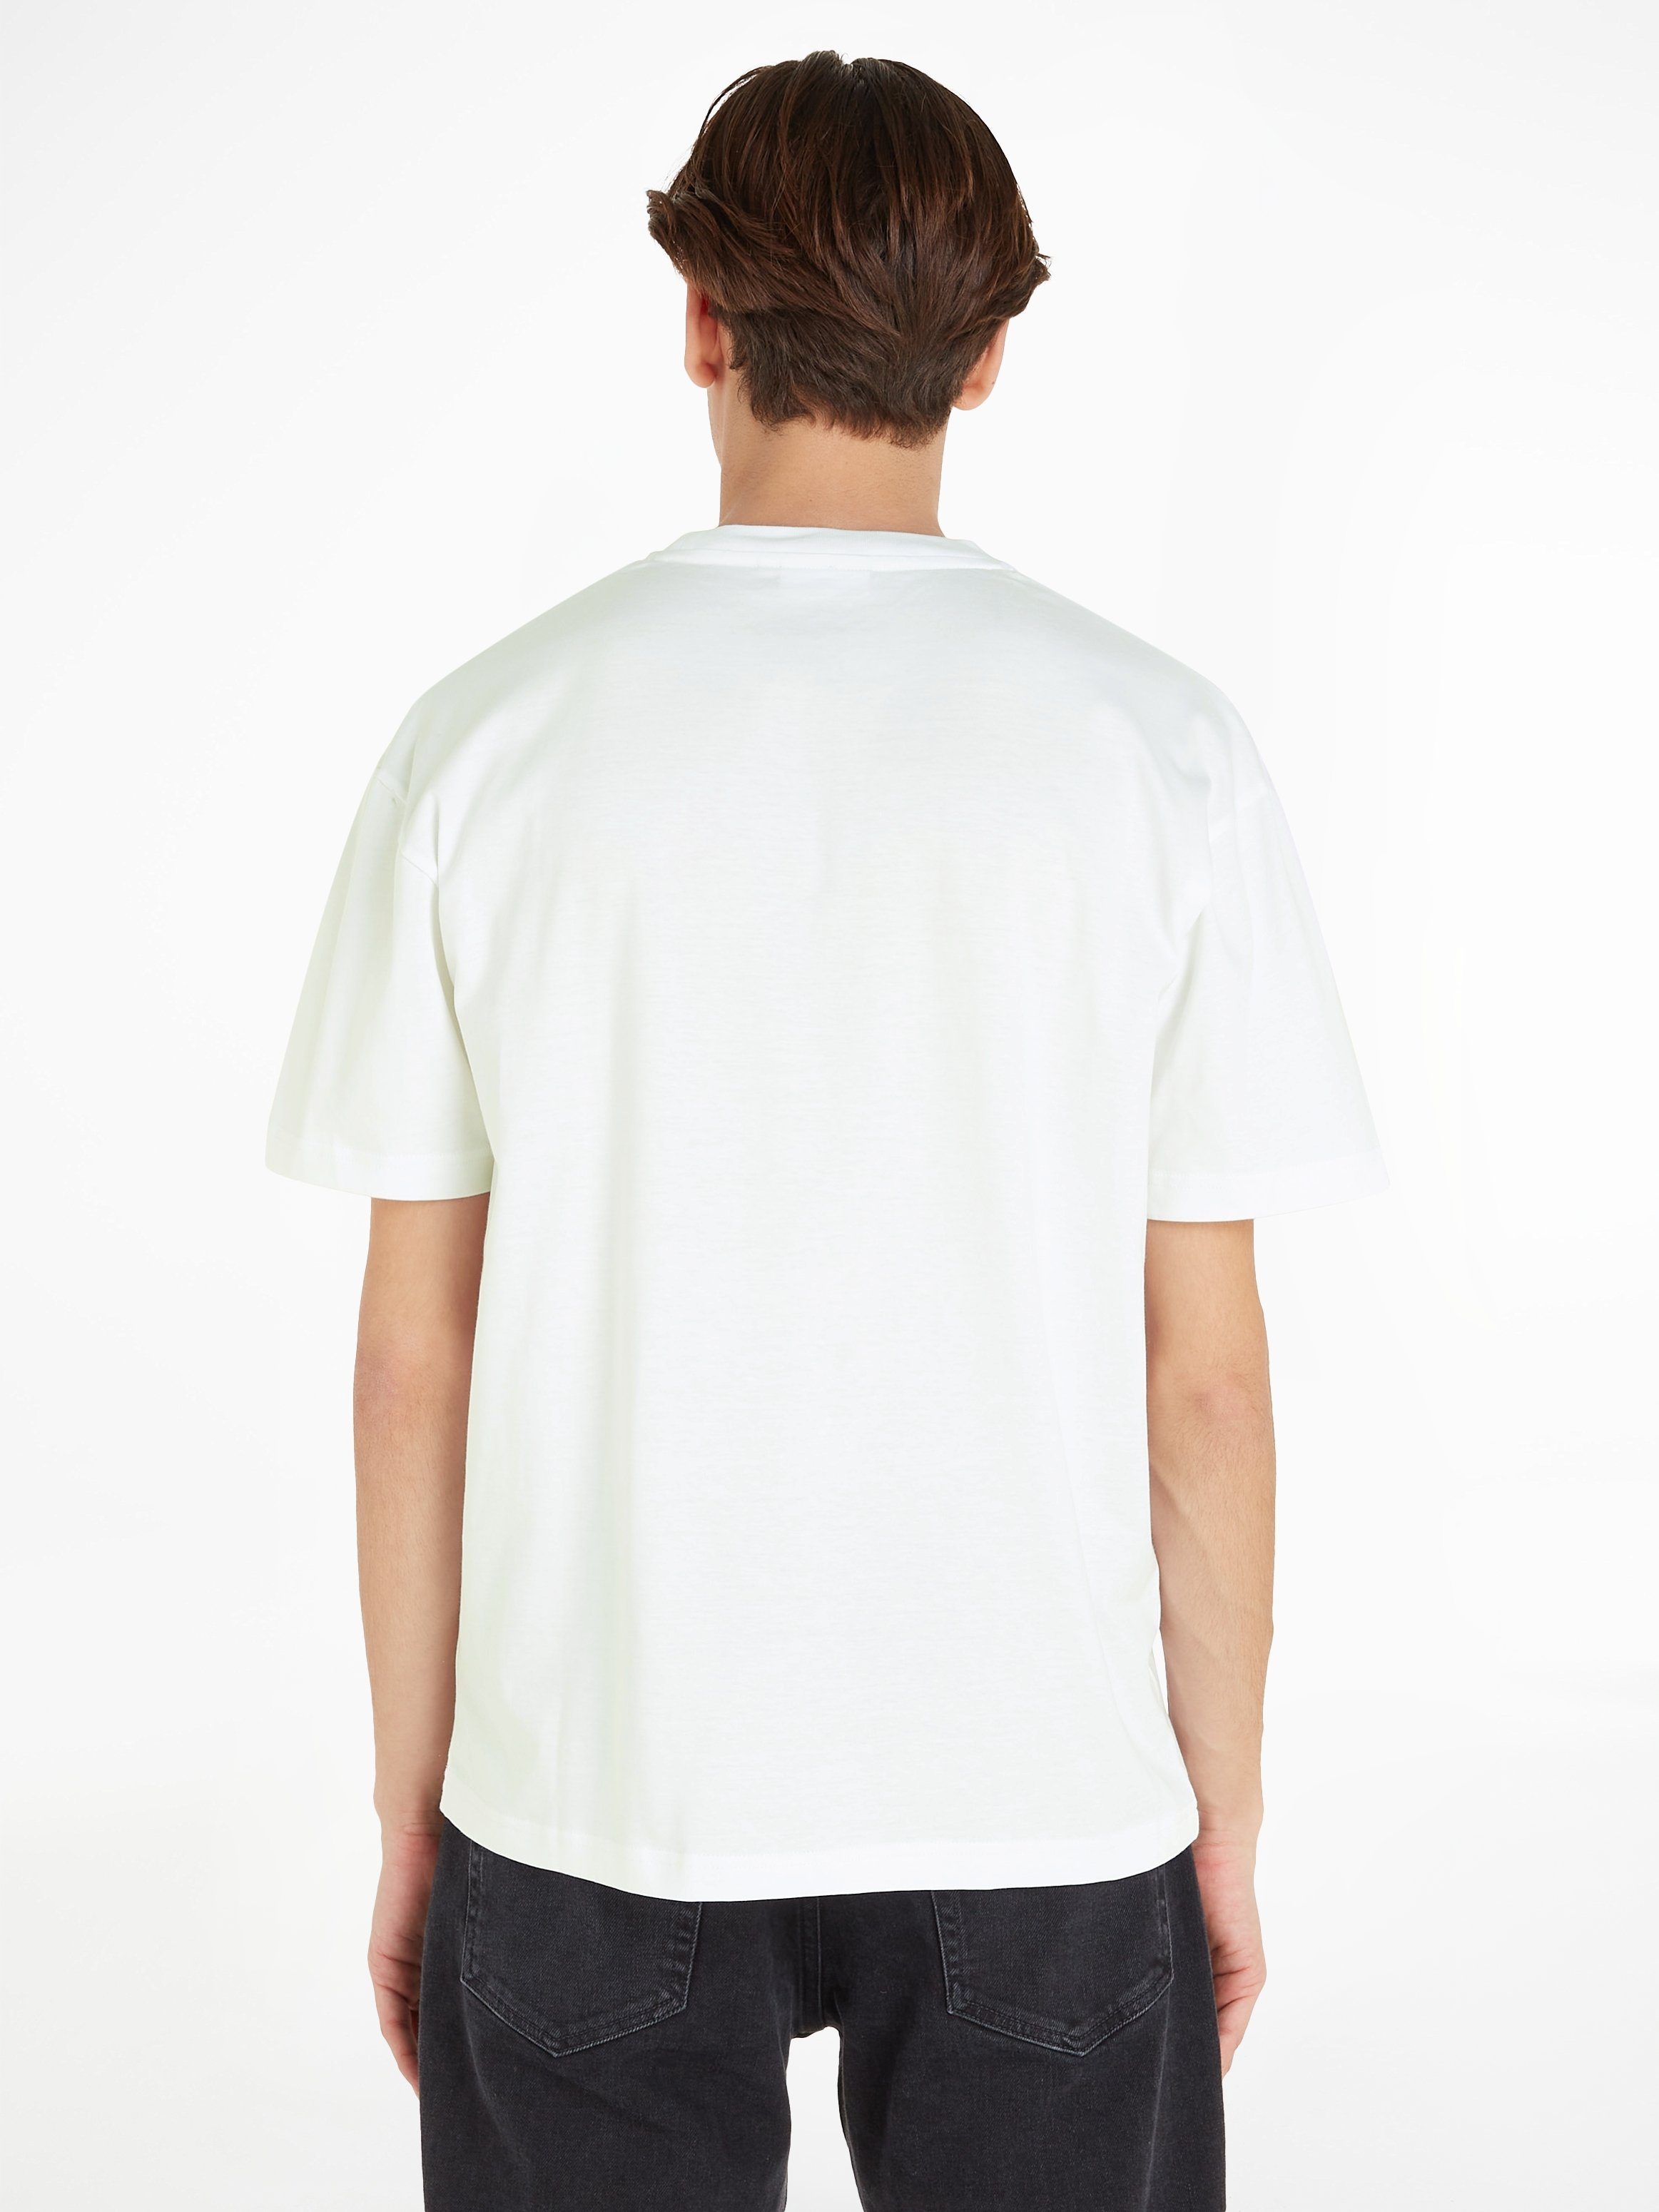 Calvin Klein mit T-SHIRT T-Shirt HERO Bright Markenlabel COMFORT aufgedrucktem White LOGO